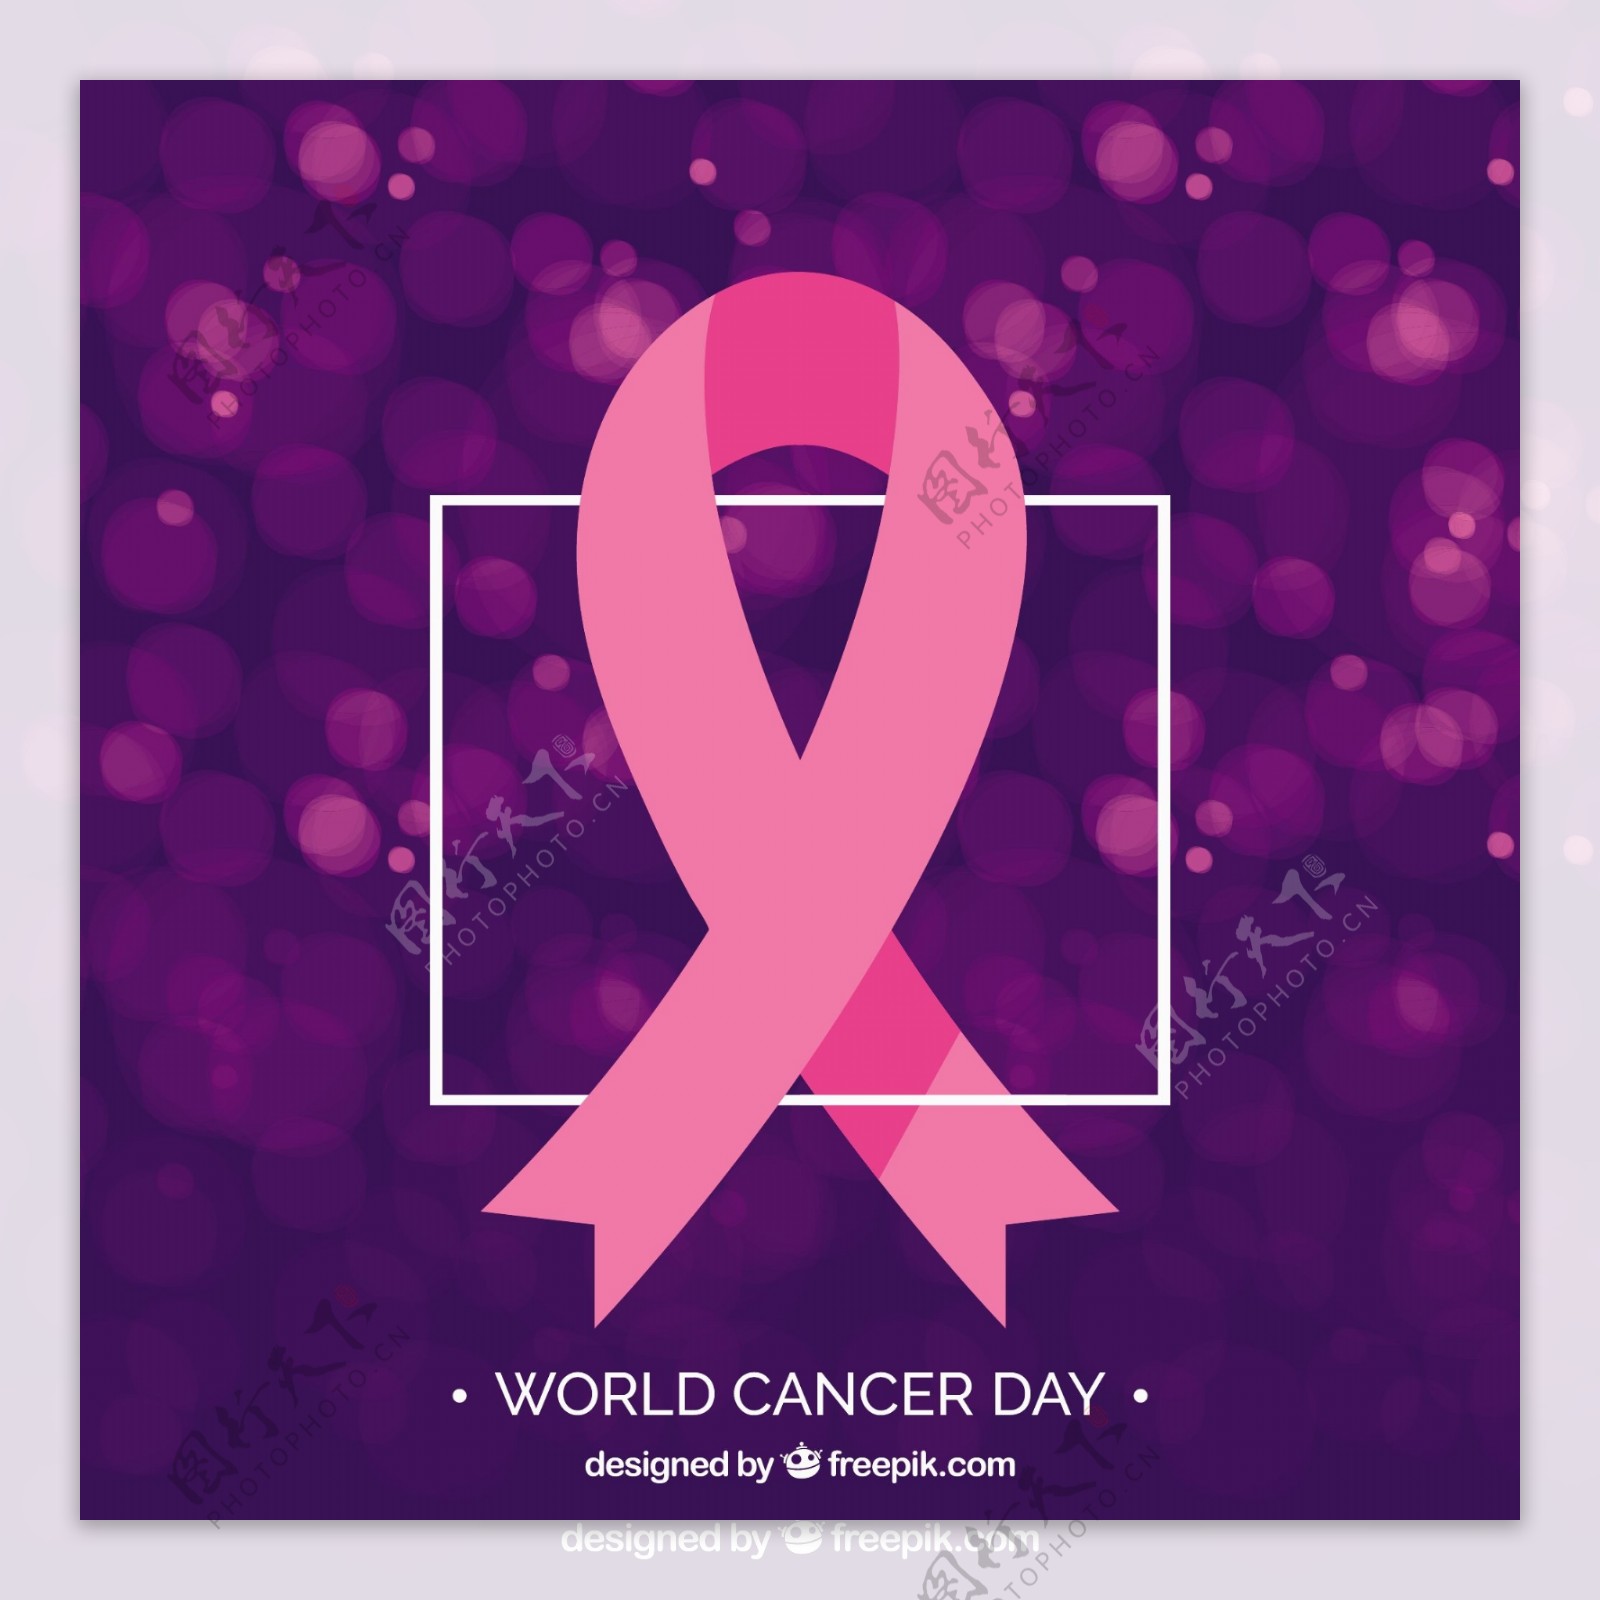 粉红丝带的背景与世界癌症日的背景虚化效果